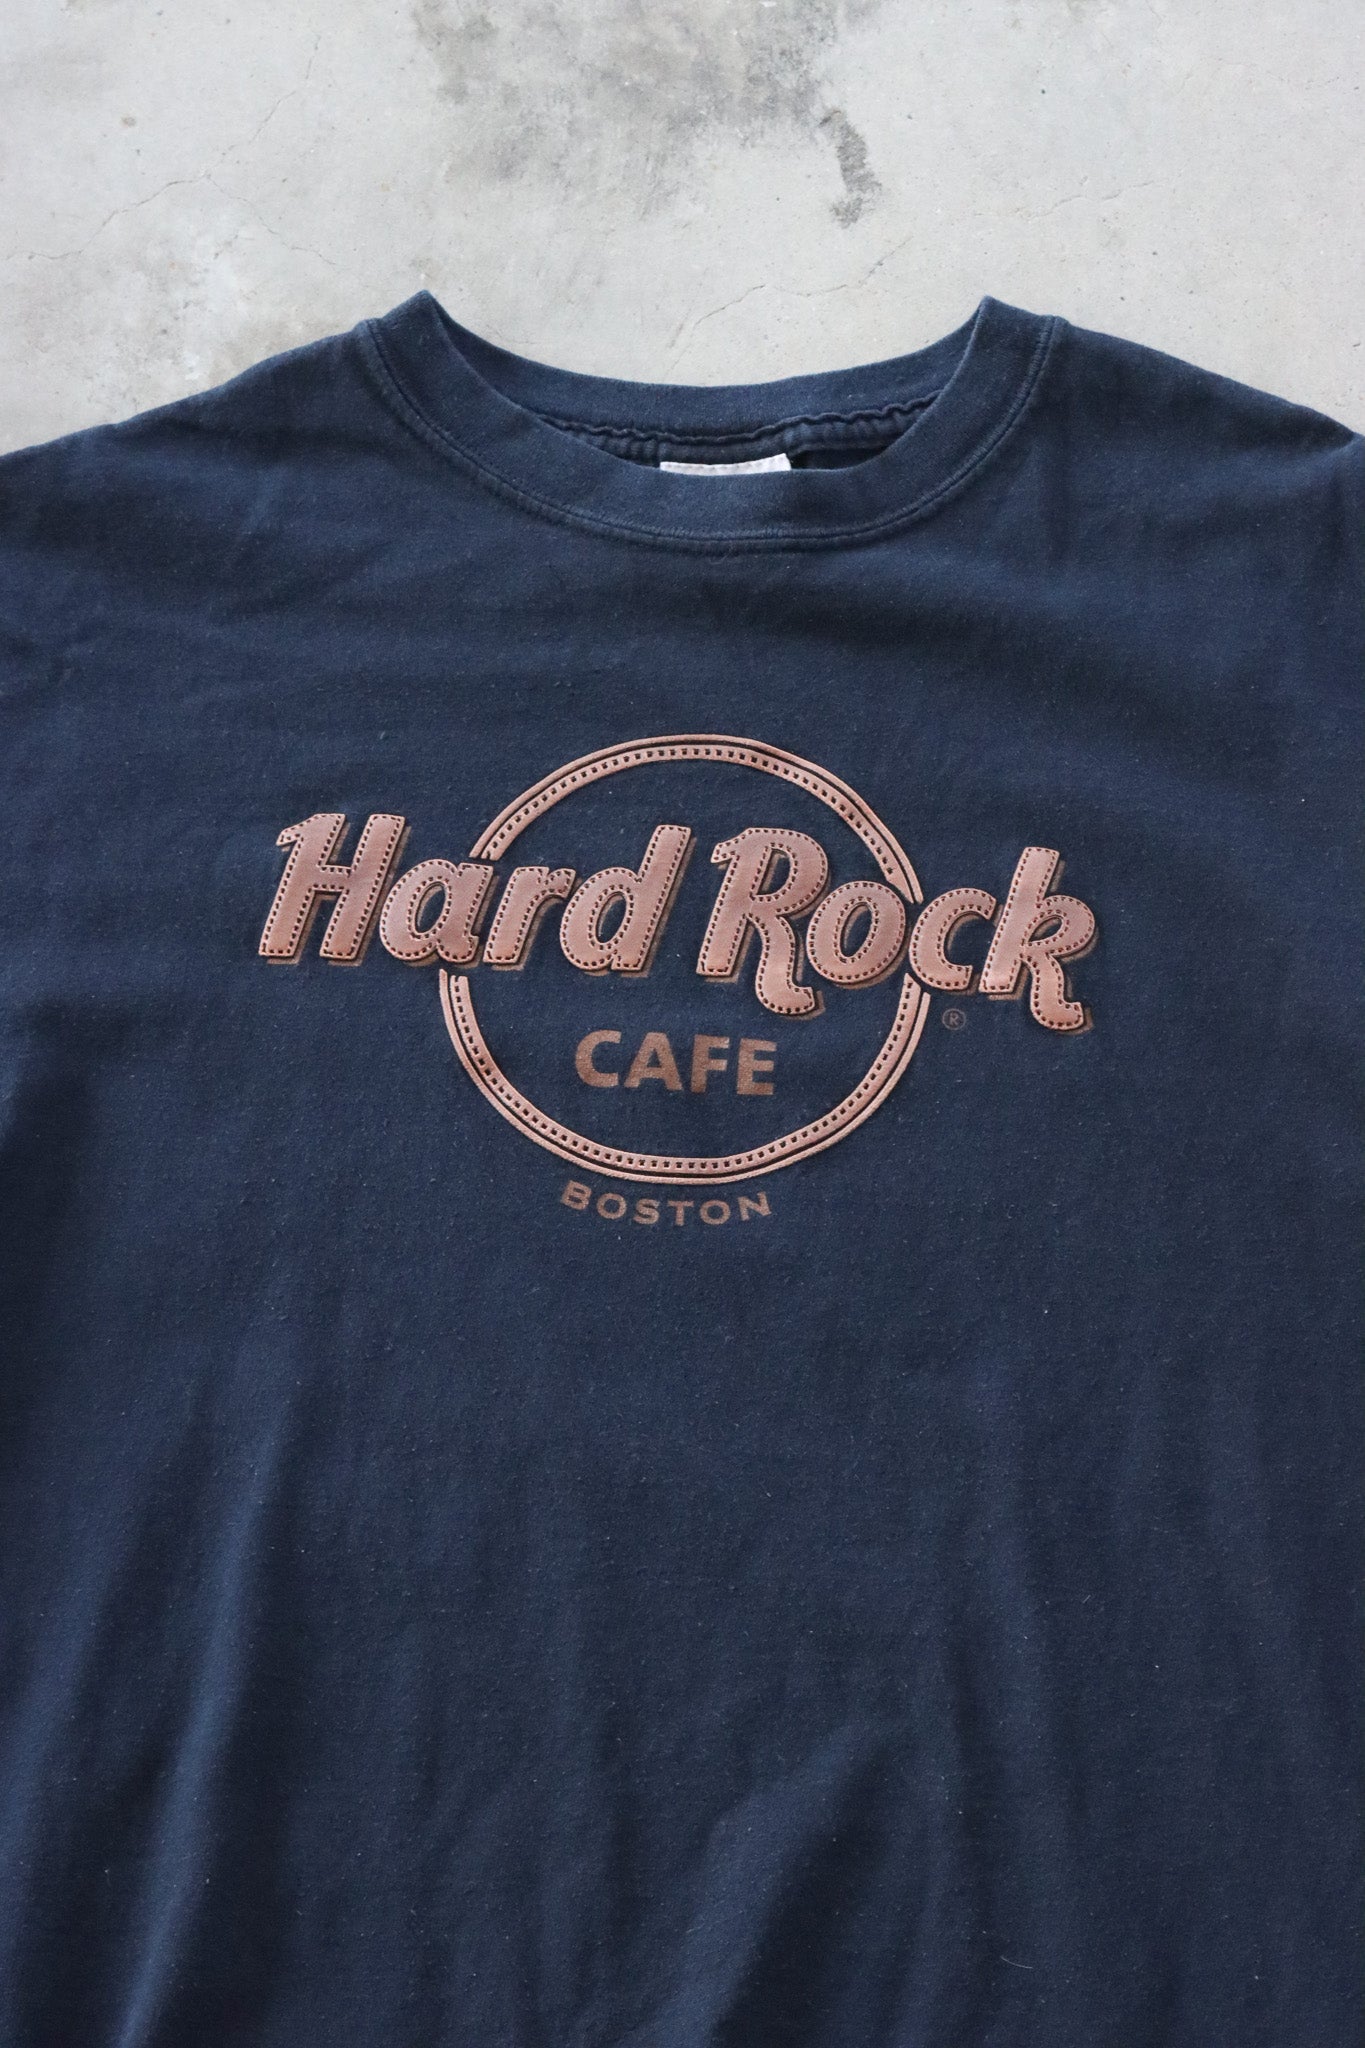 Vintage Hard Rock Cafe Boston Tee Medium